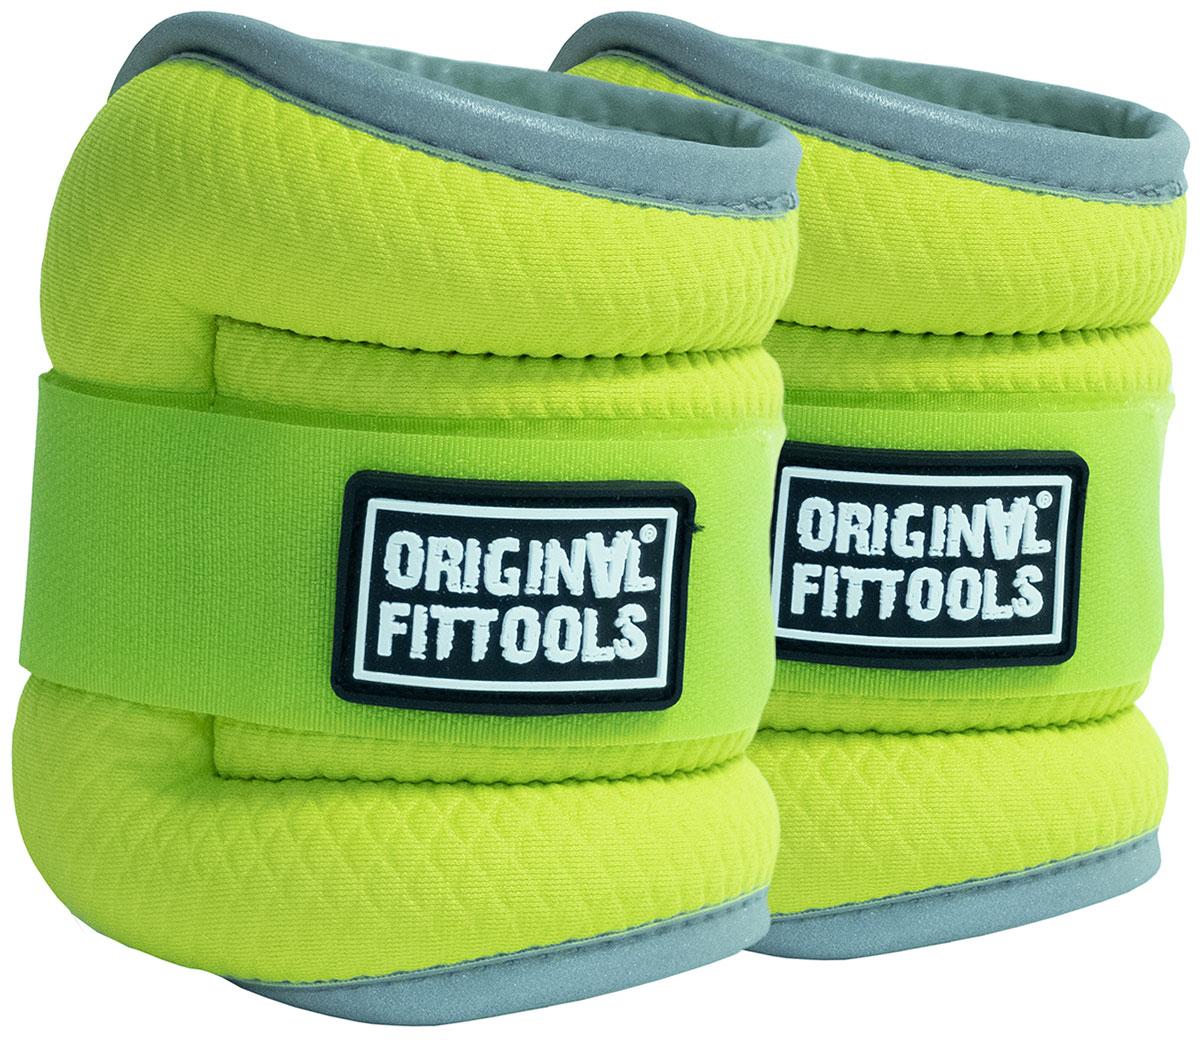 Комплект утяжелителей Original FitTools весом 1 кг пара, ярко-зеленые, FT-AW01-AG утяжелитель original fittools комплект утяжелителей весом 1 кг пара